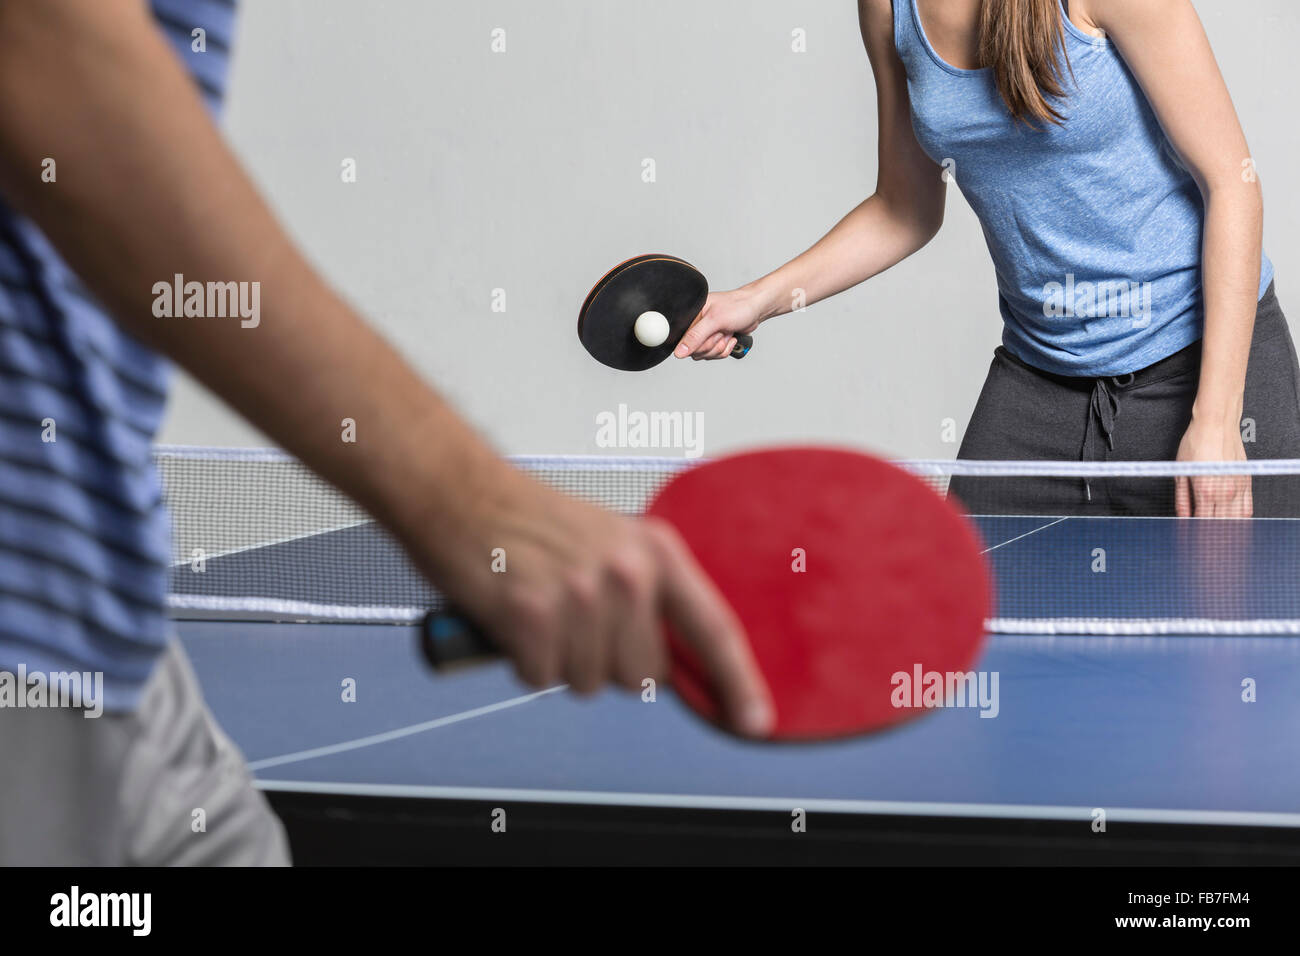 Portrait de l'homme et de la femme à jouer au tennis de table Banque D'Images